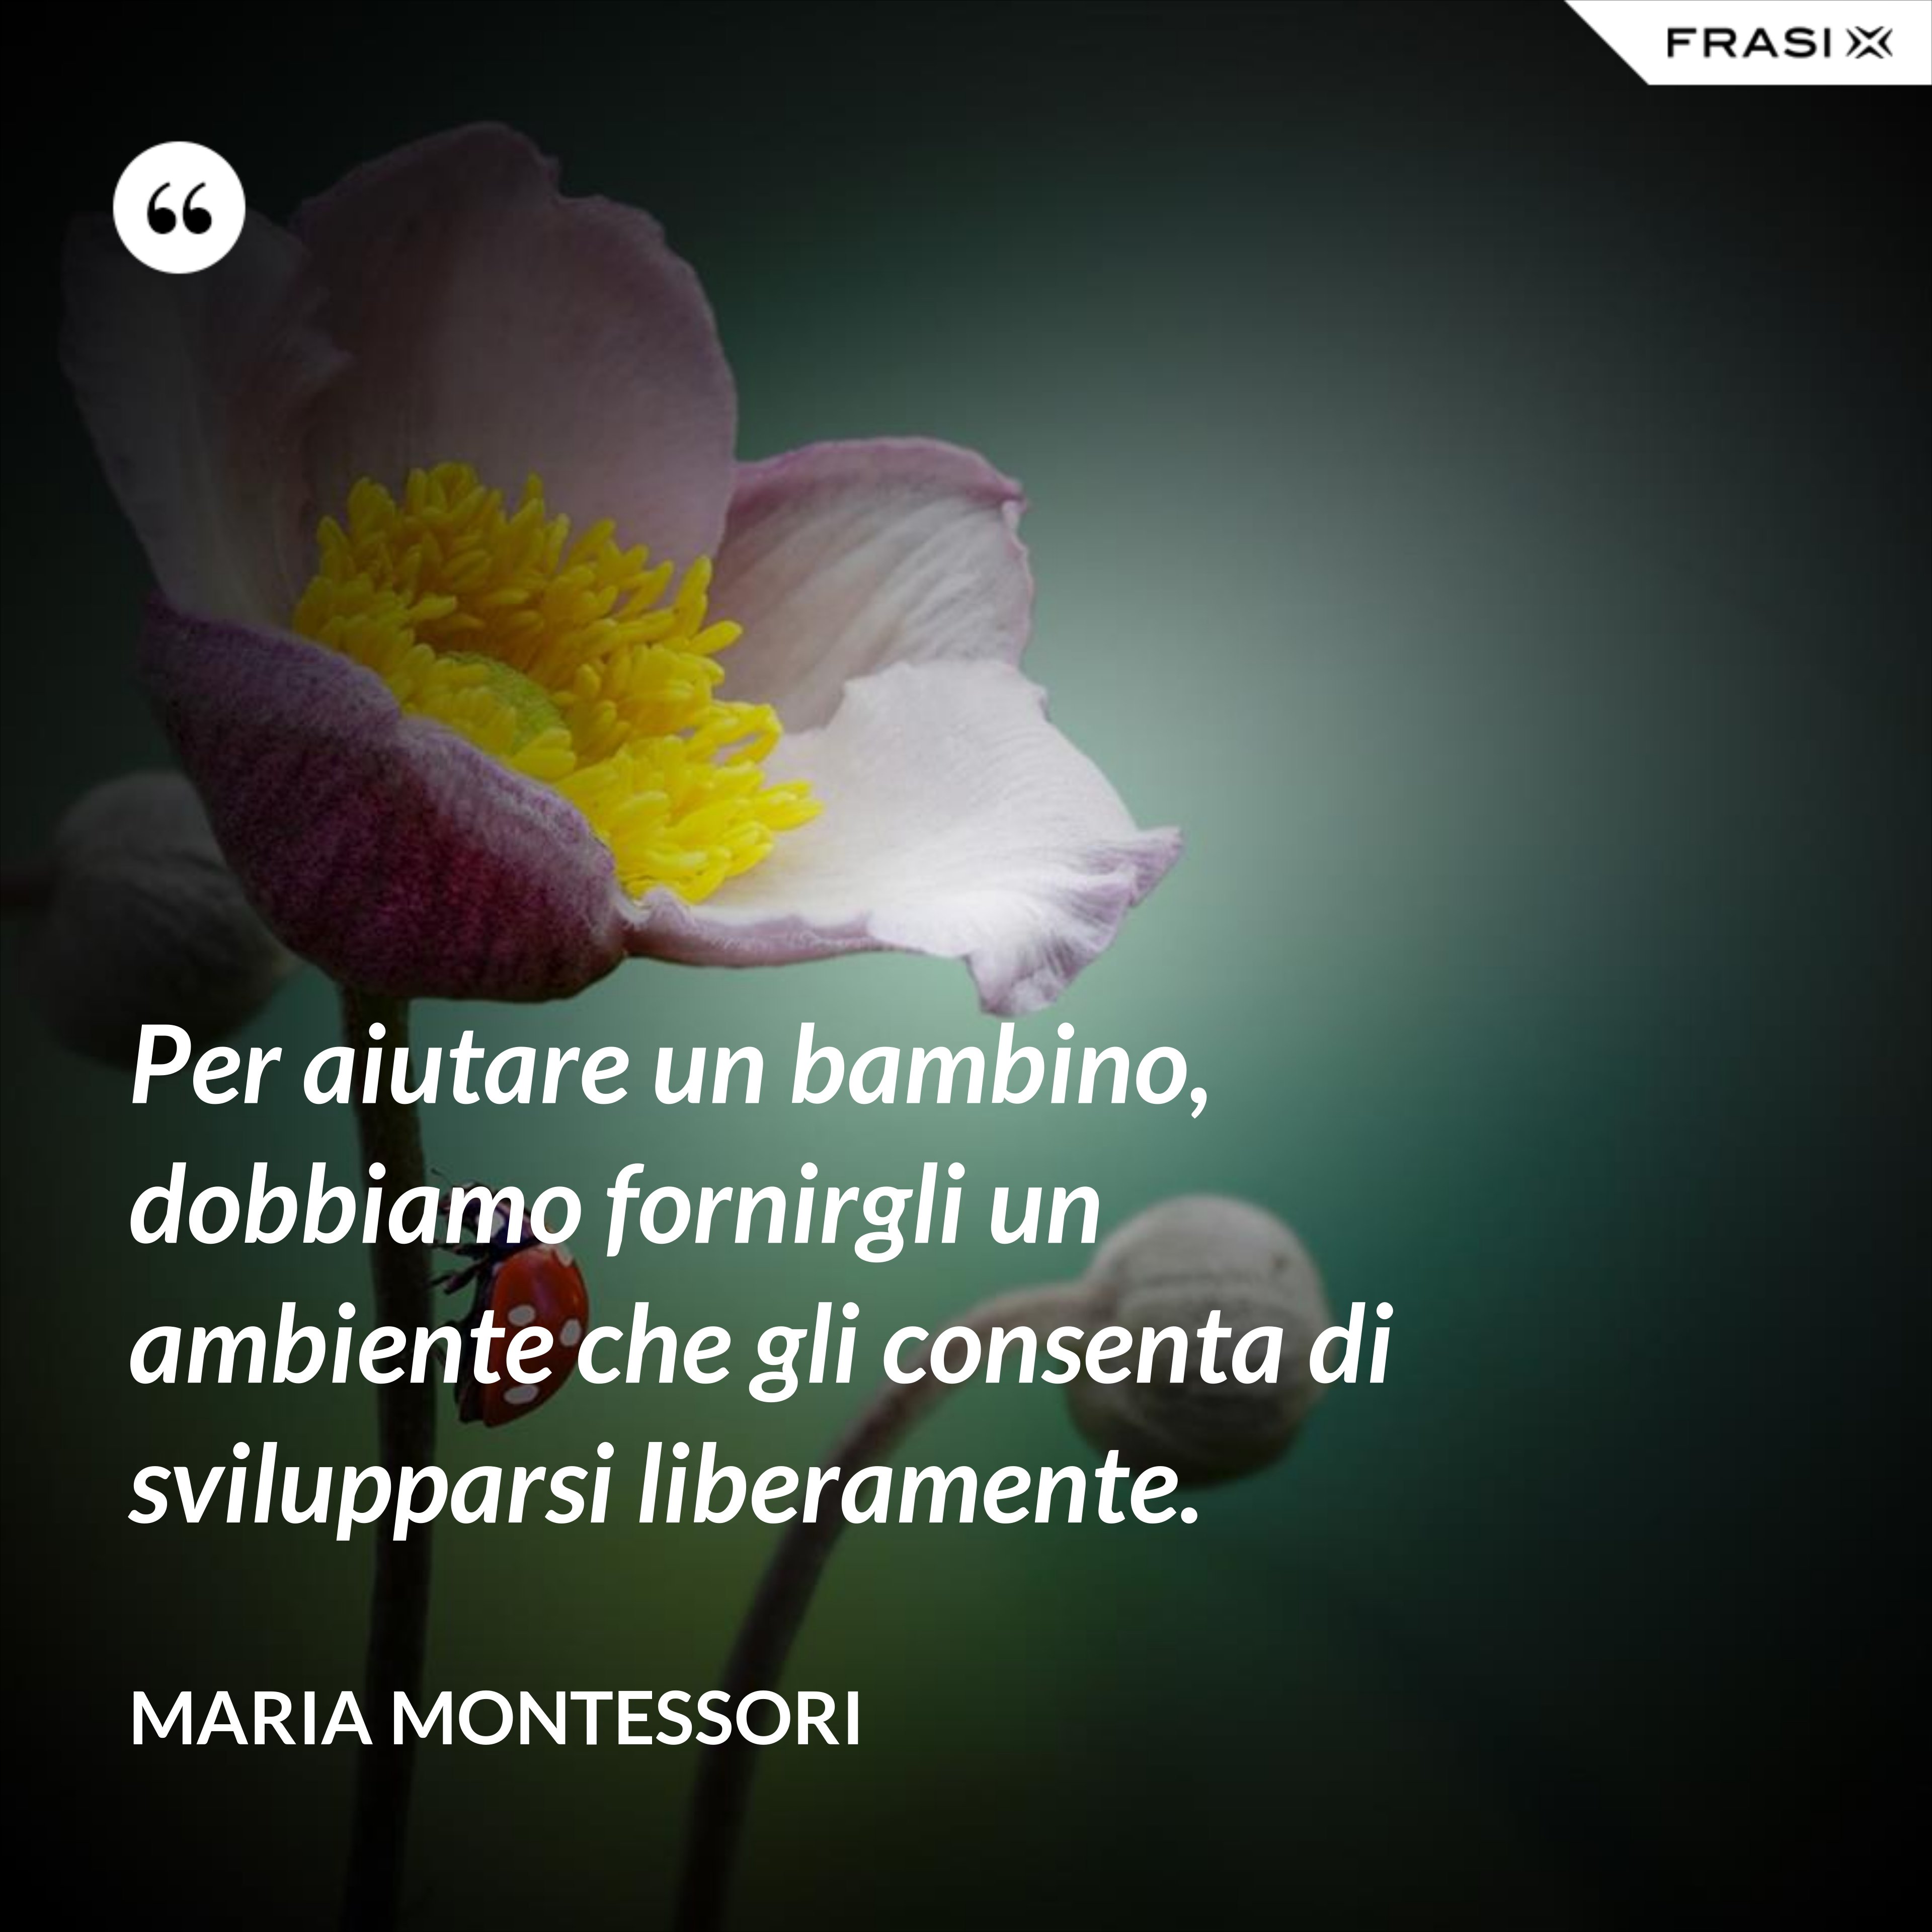 Per aiutare un bambino, dobbiamo fornirgli un ambiente che gli consenta di svilupparsi liberamente. - Maria Montessori